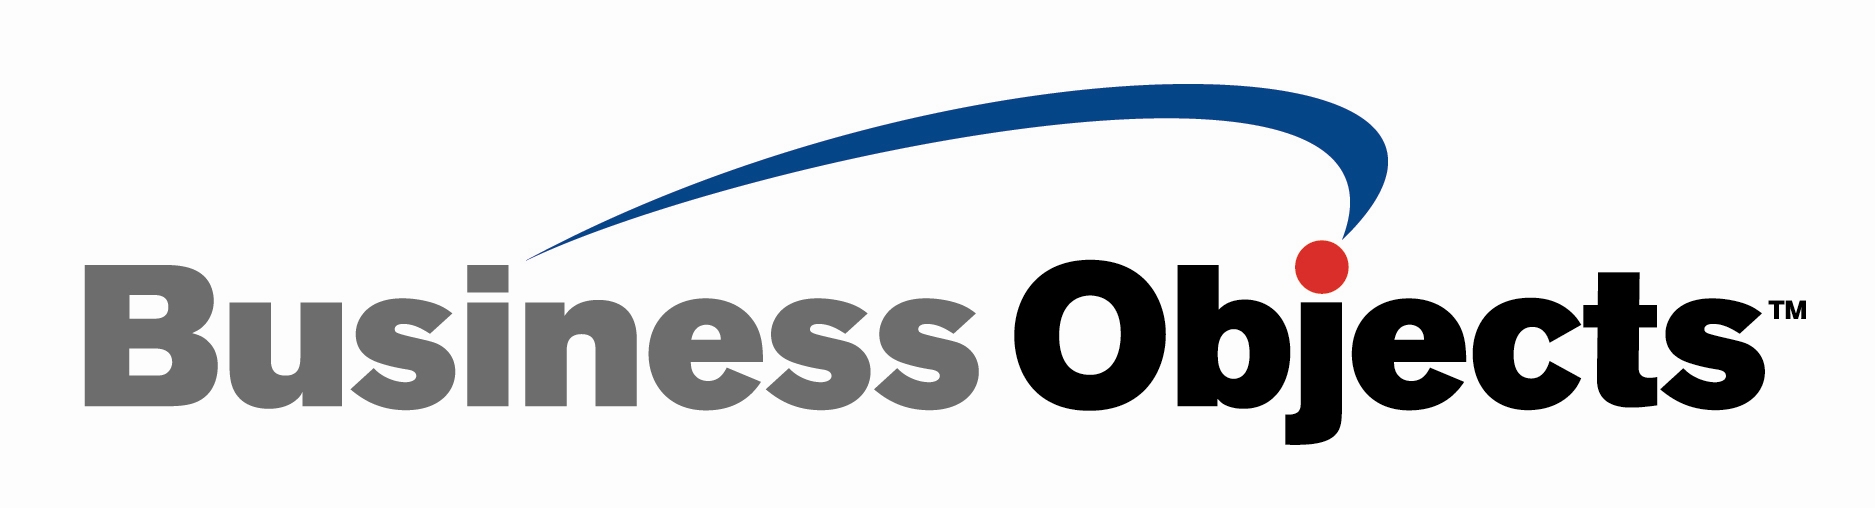 Business-Objects-Logo.jpg